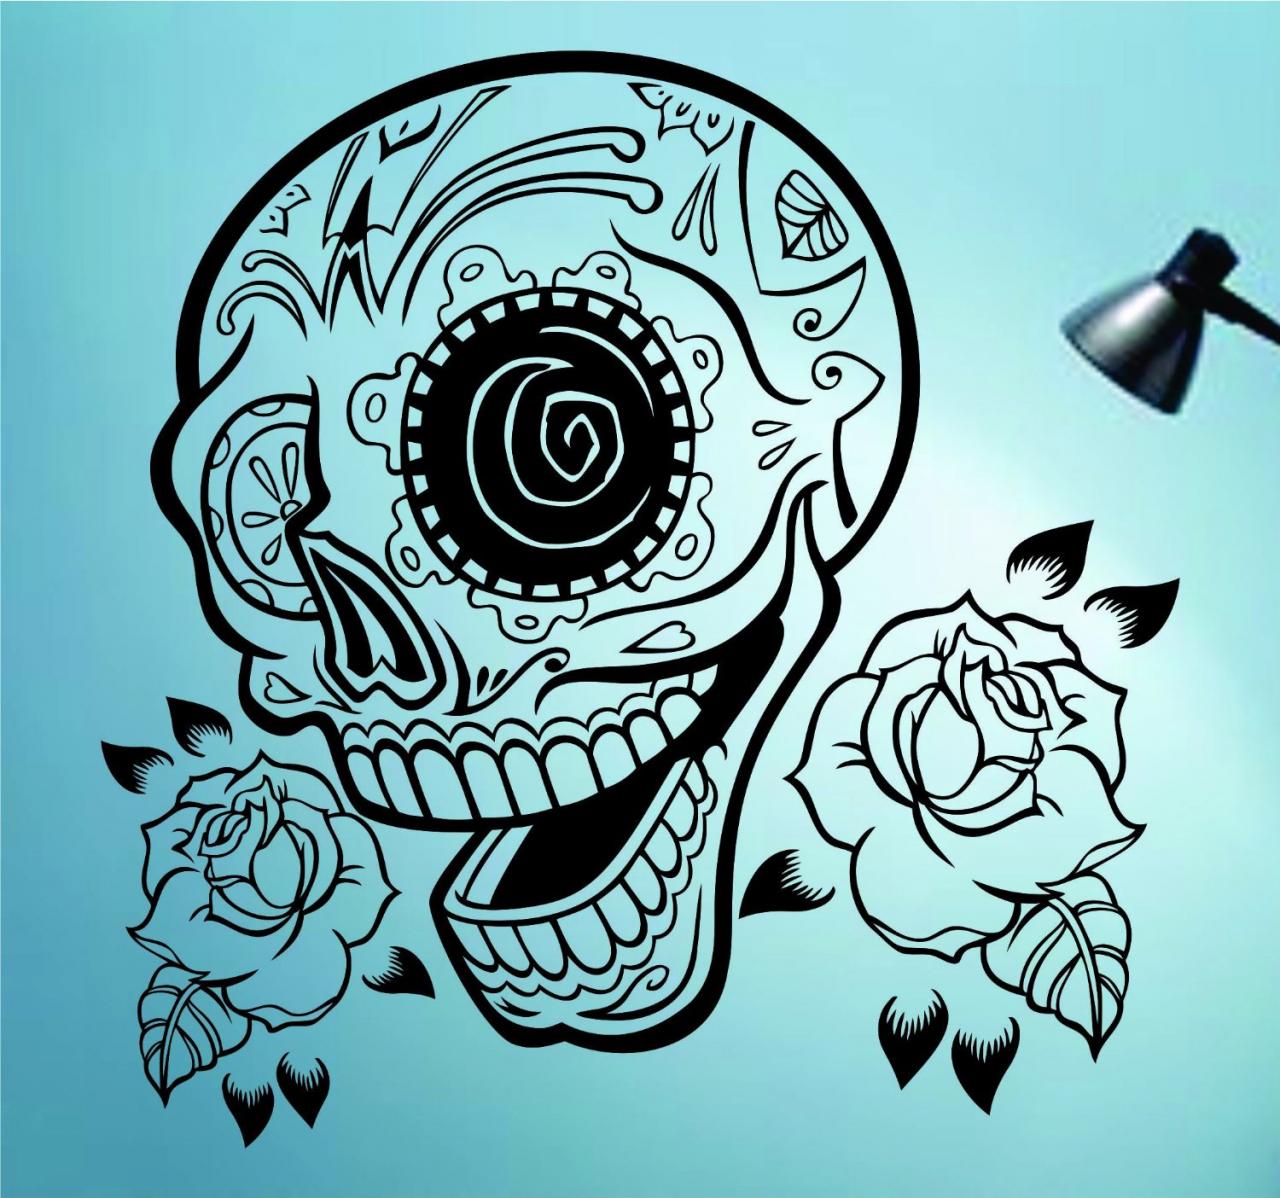 Sugarskull Version 22 With Roses Wall Vinyl Decal Sticker Art Graphic Sticker Sugar Skull